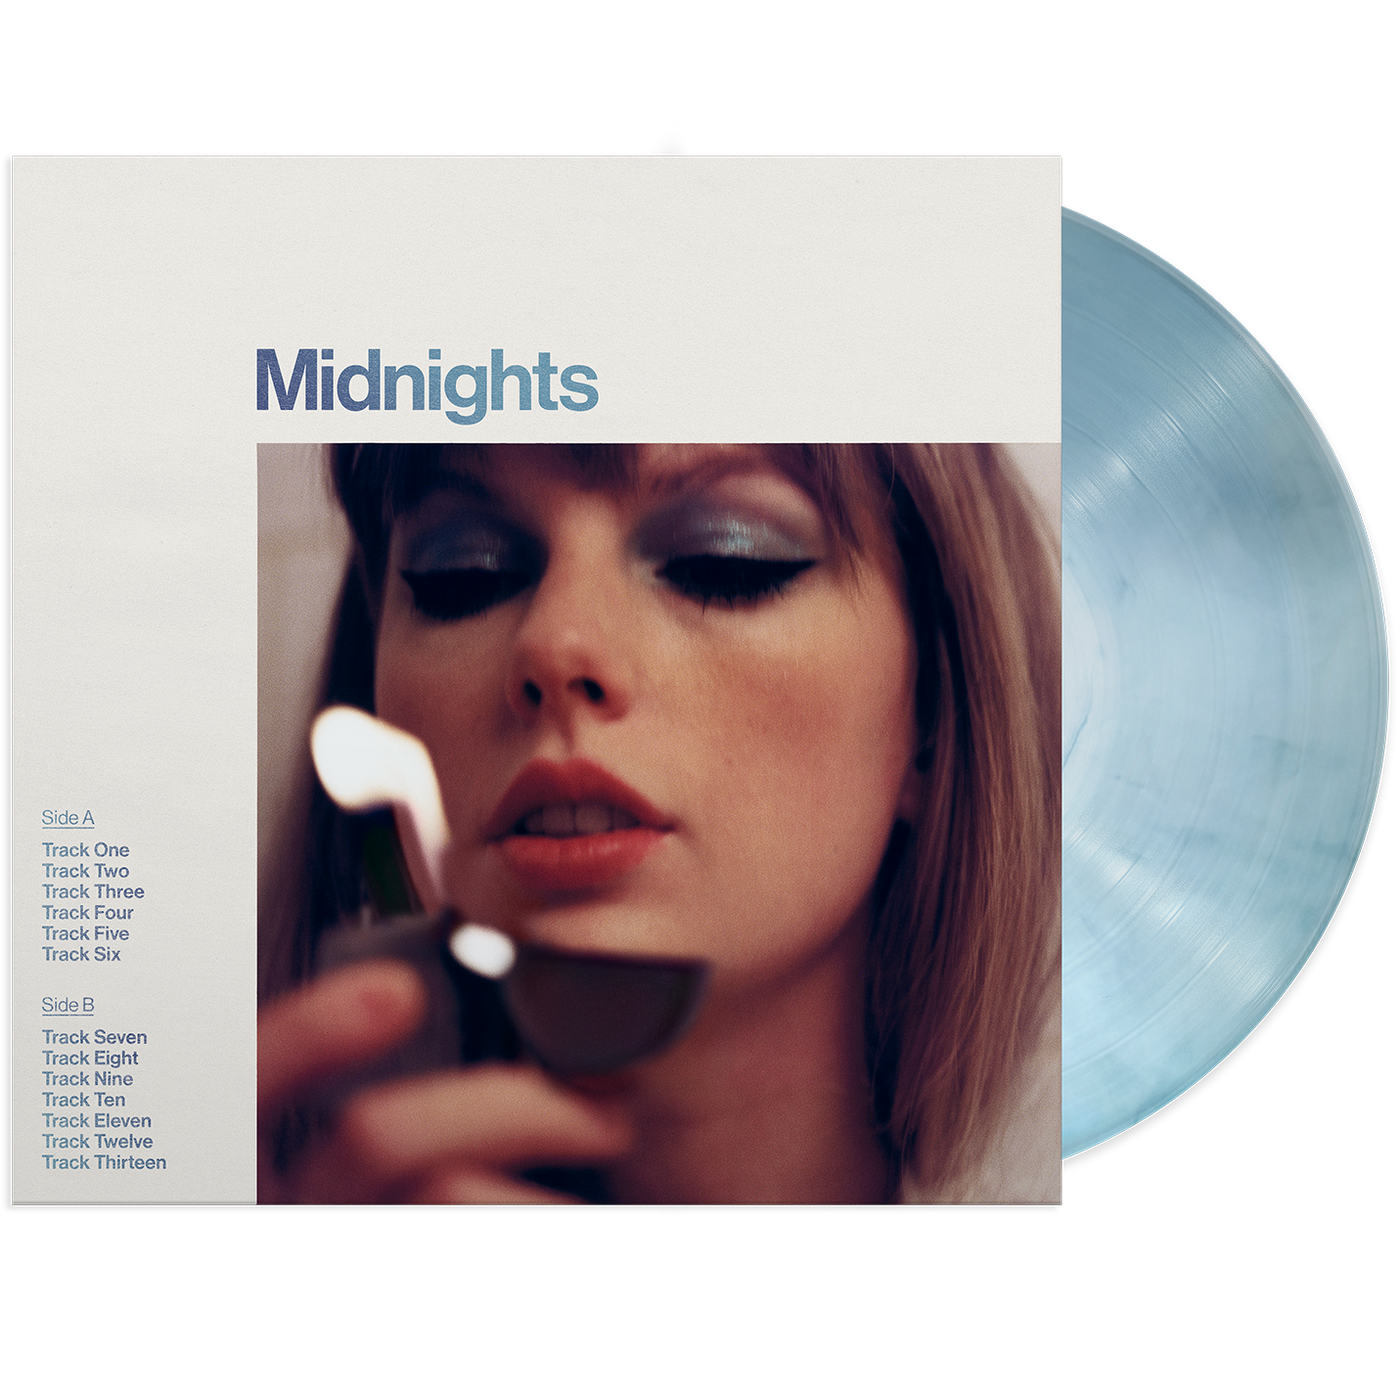 Midnights: Moonstone Blue Edition Vinyl